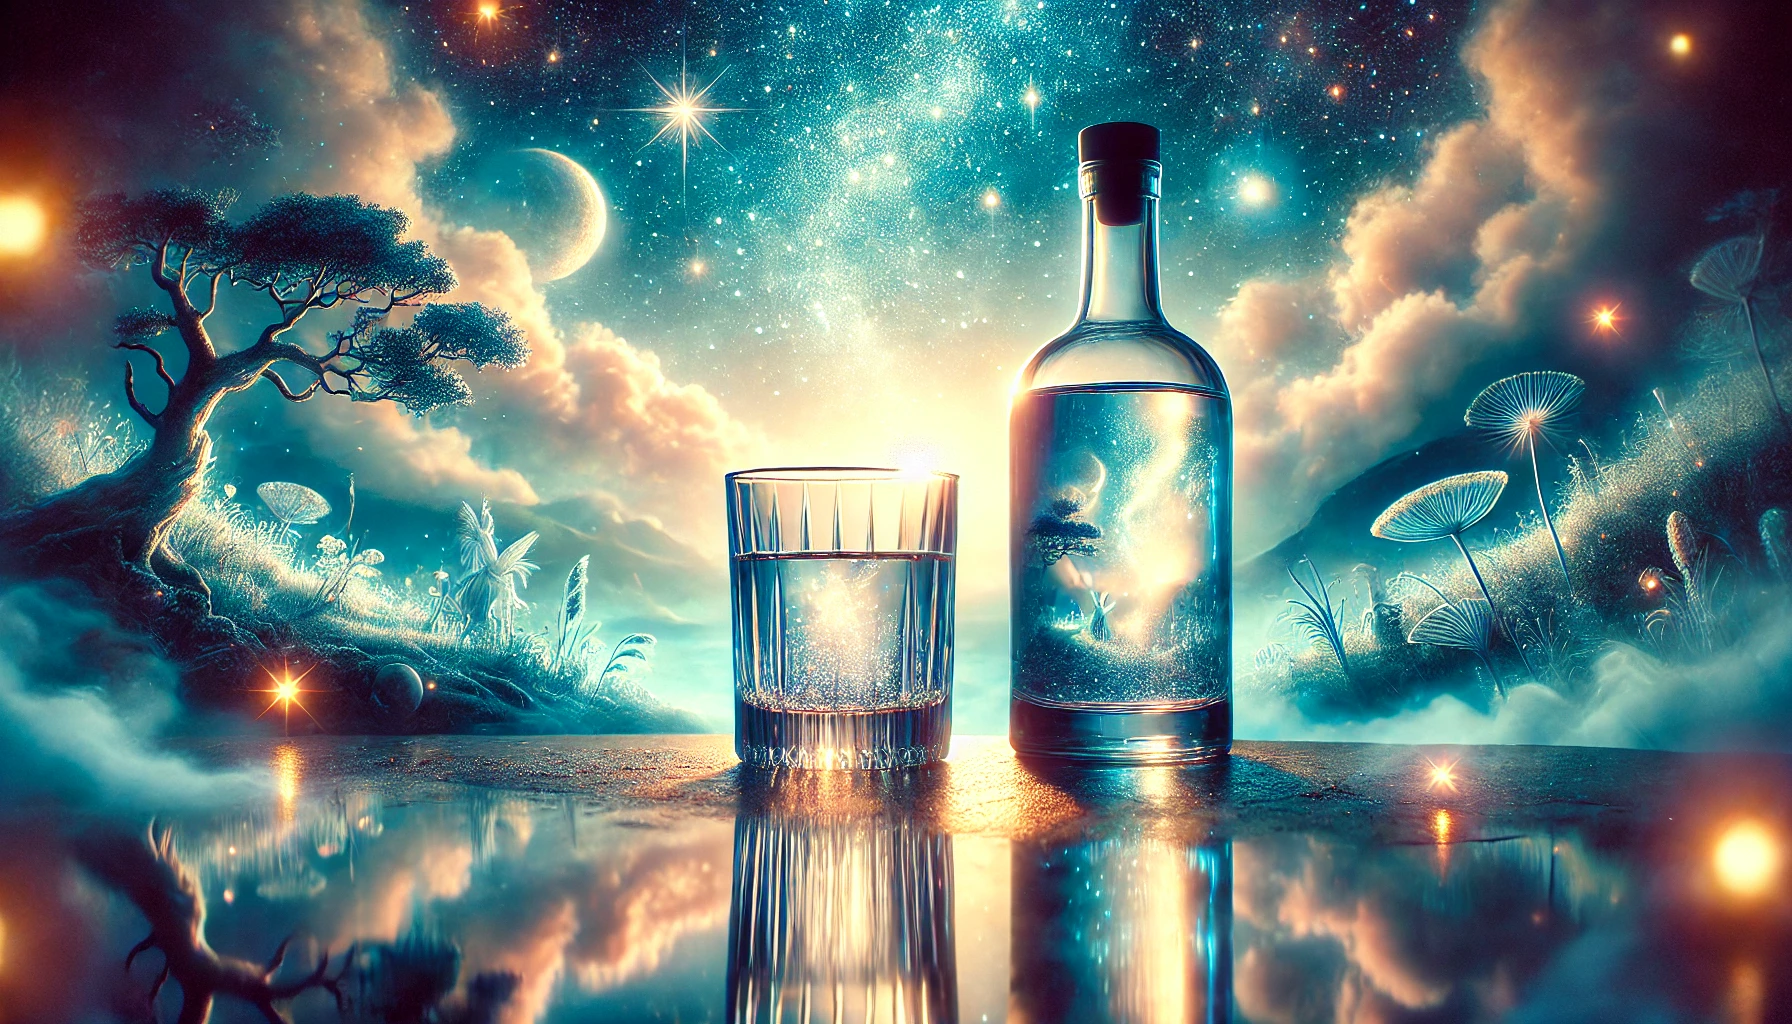 Rüyada Votka Görmek | Votka İçmek | Votka Şişesi Görmek Nedir?